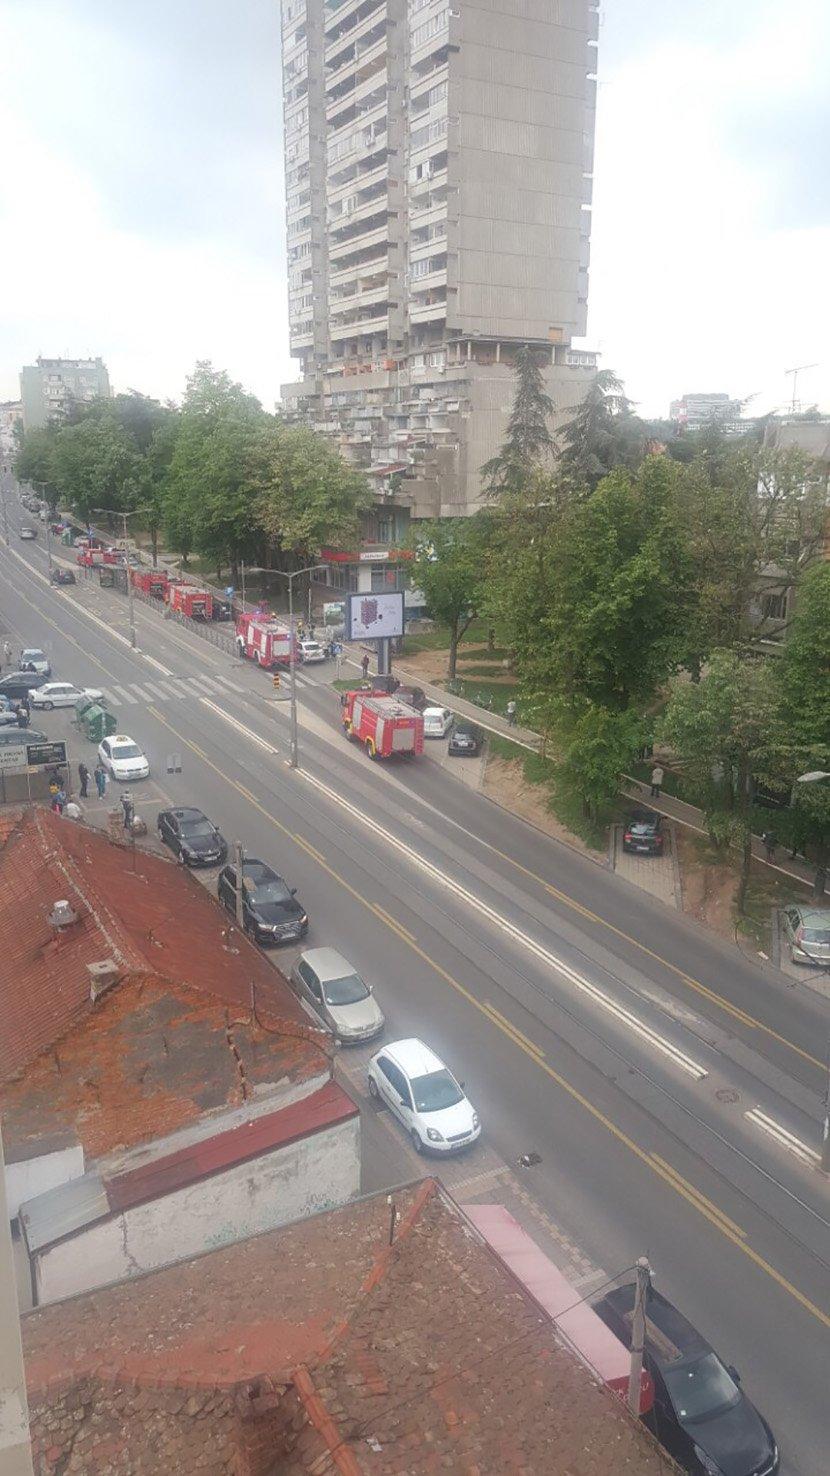 Jak dim i vatra kuljaju sa zgrade u Ulici Vojvode Stepe 118 - Avaz